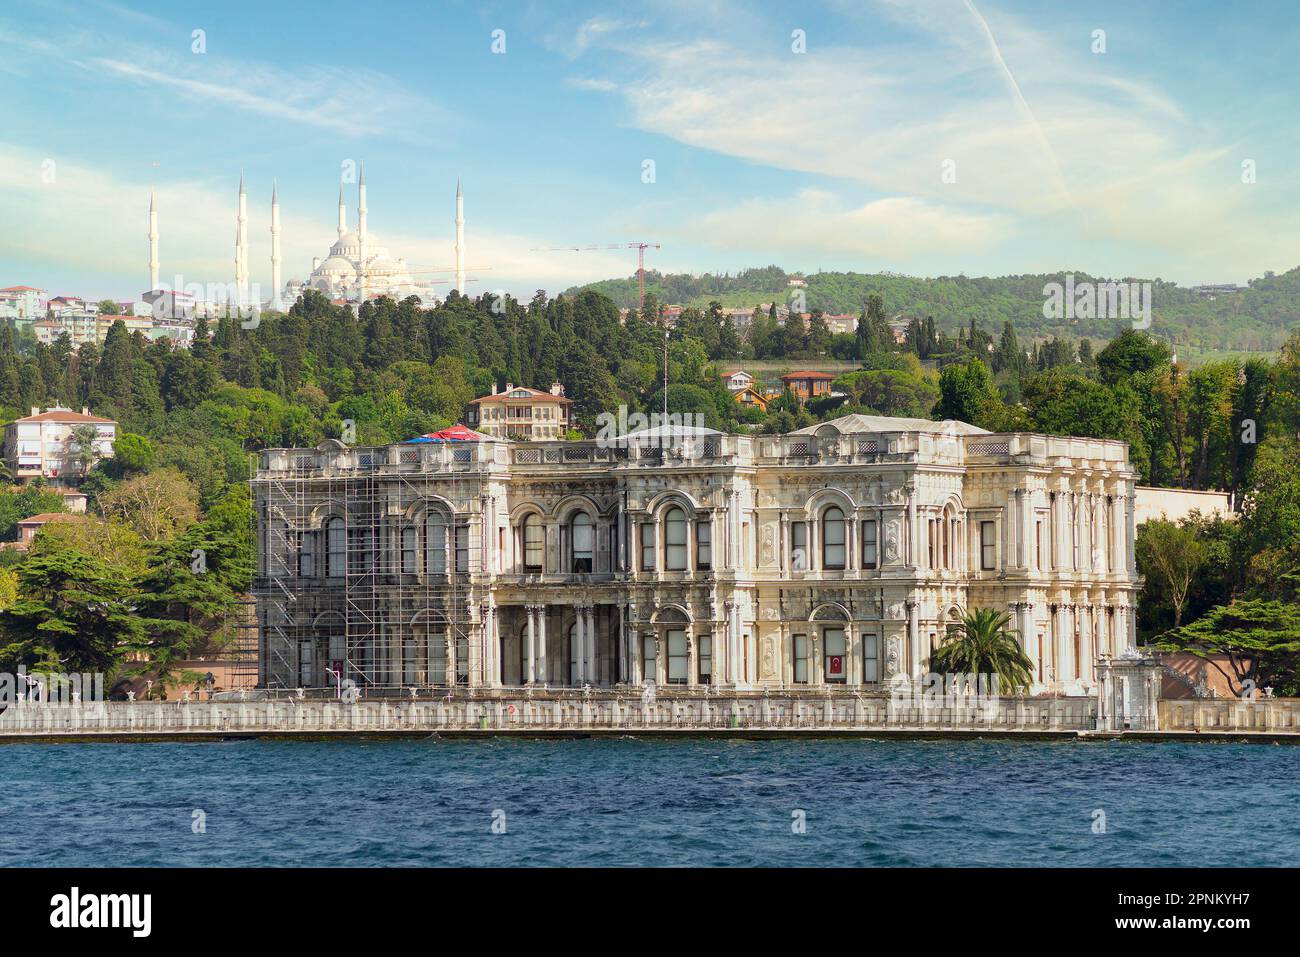 Un Palazzo Beylerbeyi di epoca ottomana del 1865, situato sulla sponda asiatica del Bosforo, a nord del Ponte sul Bosforo, Istanbul, Turchia, in una giornata estiva Foto Stock